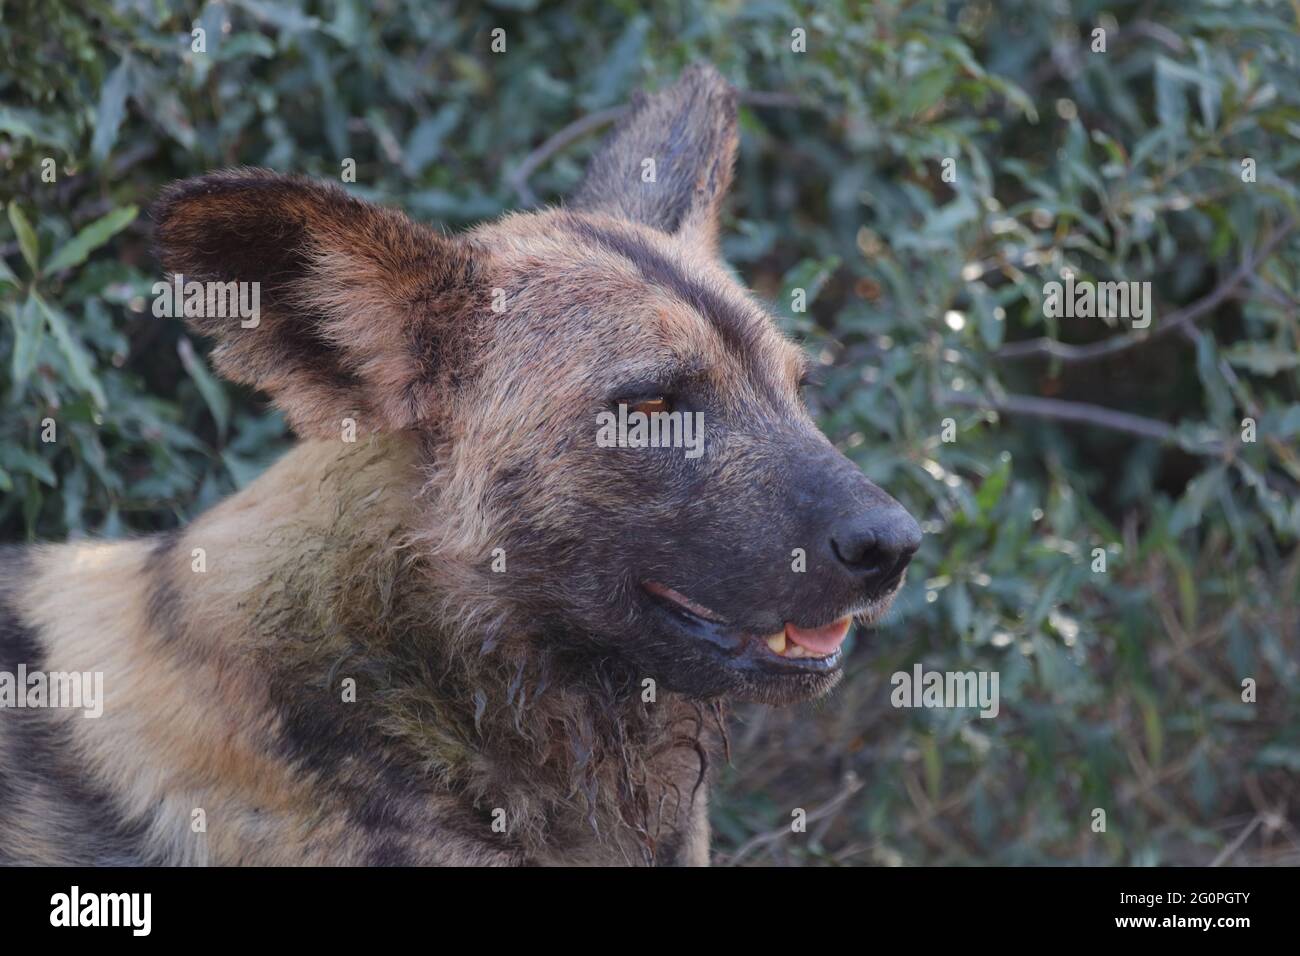 Afrikanischer Wildhund / African wild dog / Lycaon pictus Stock Photo